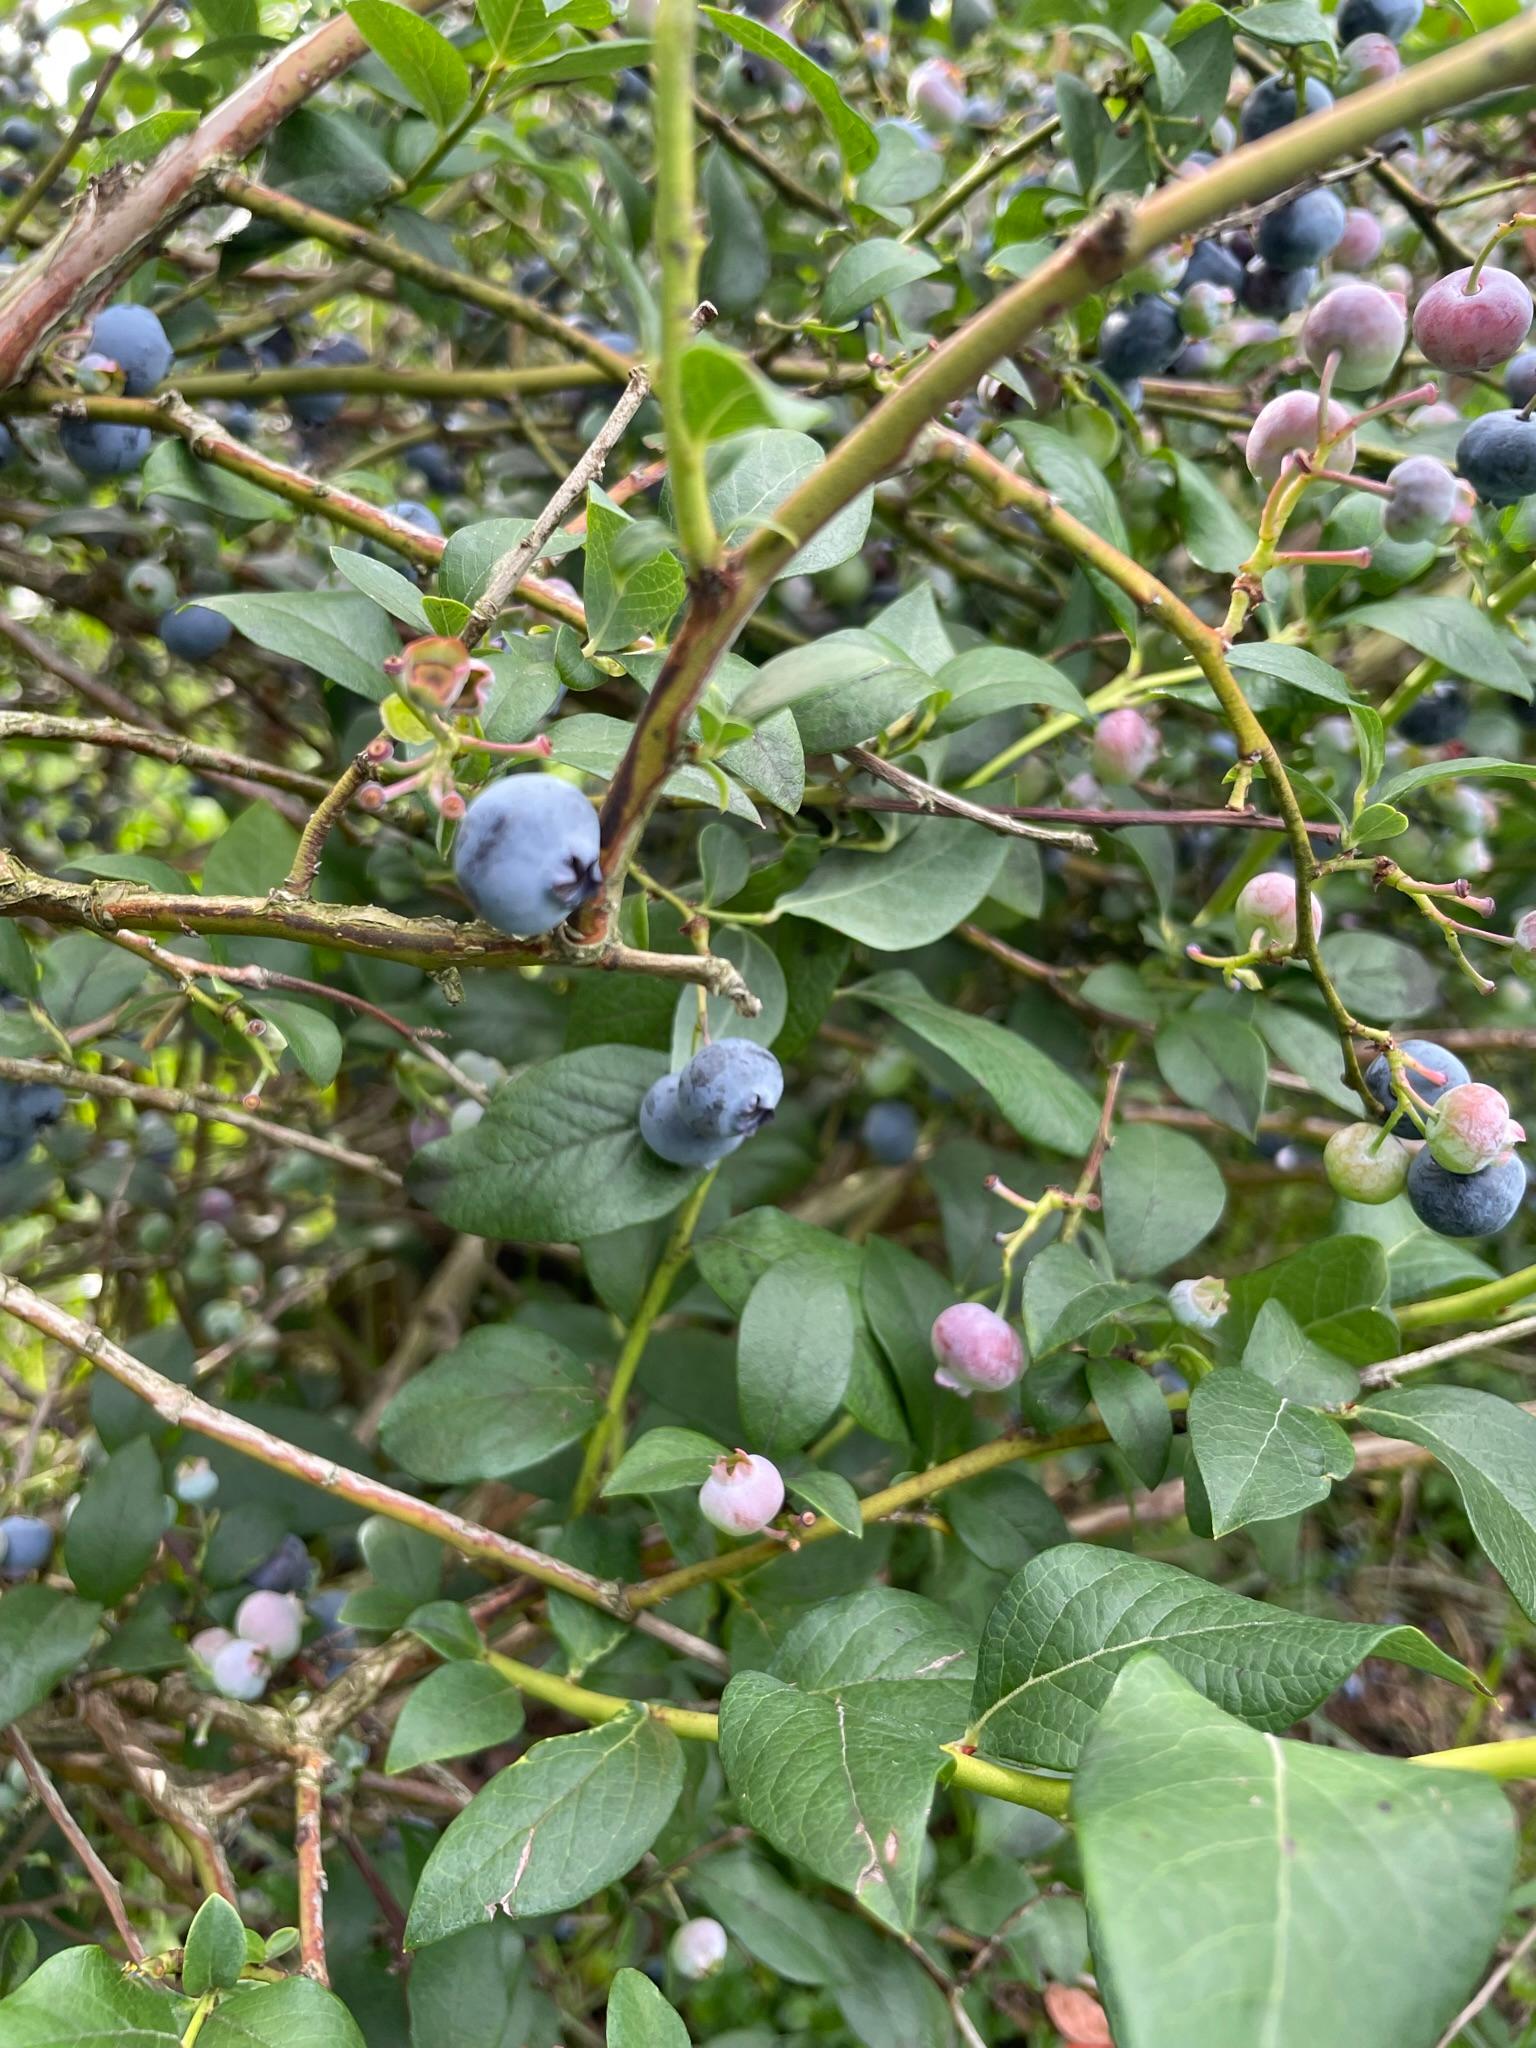 blueberries ready for harvest